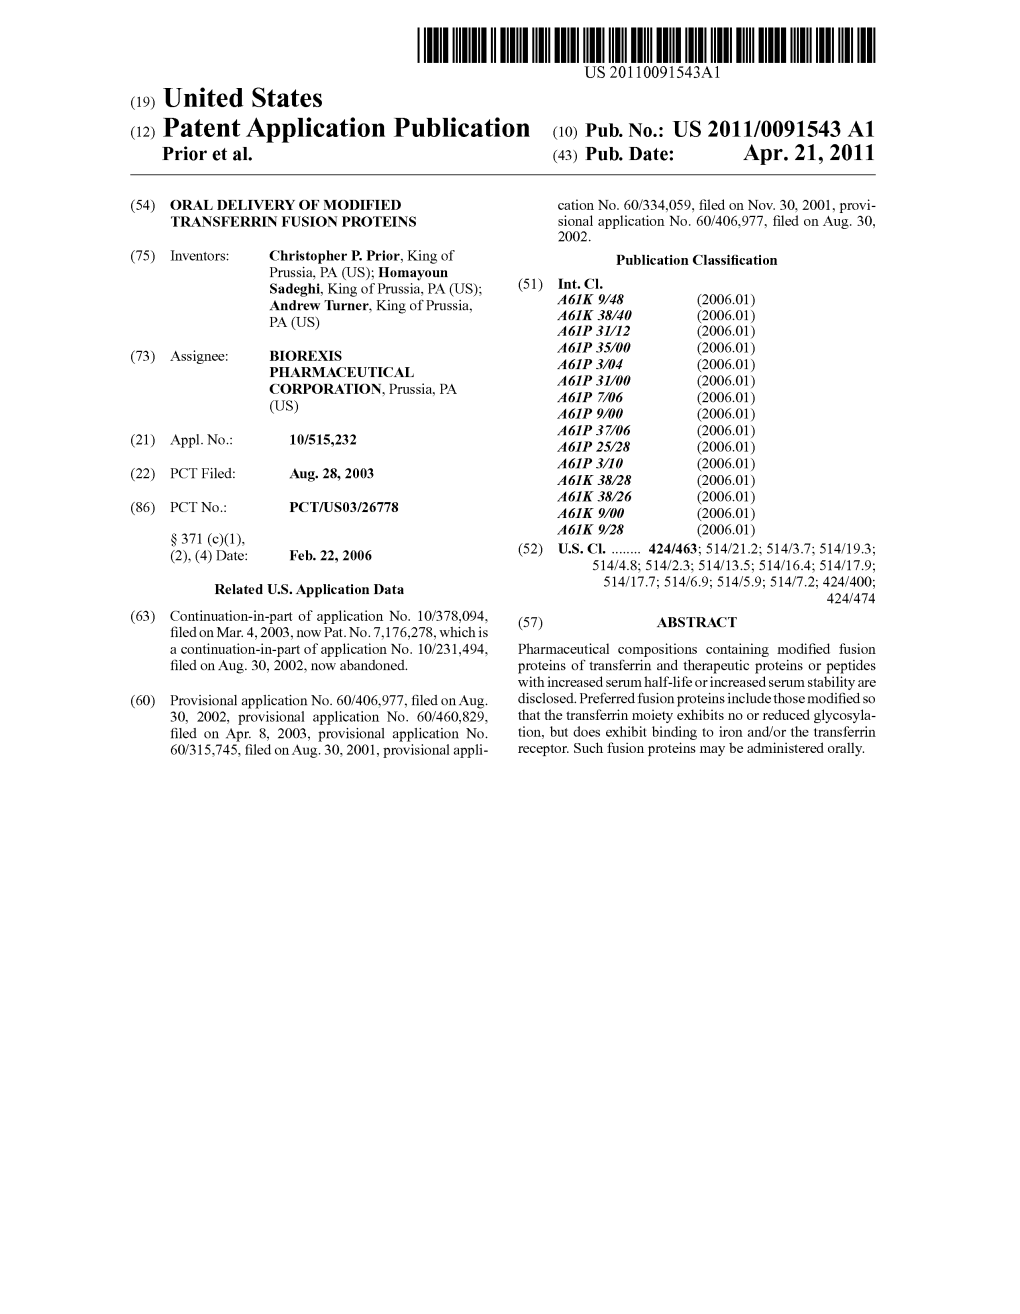 (12) Patent Application Publication (10) Pub. No.: US 2011/009 1543 A1 Prior Et Al